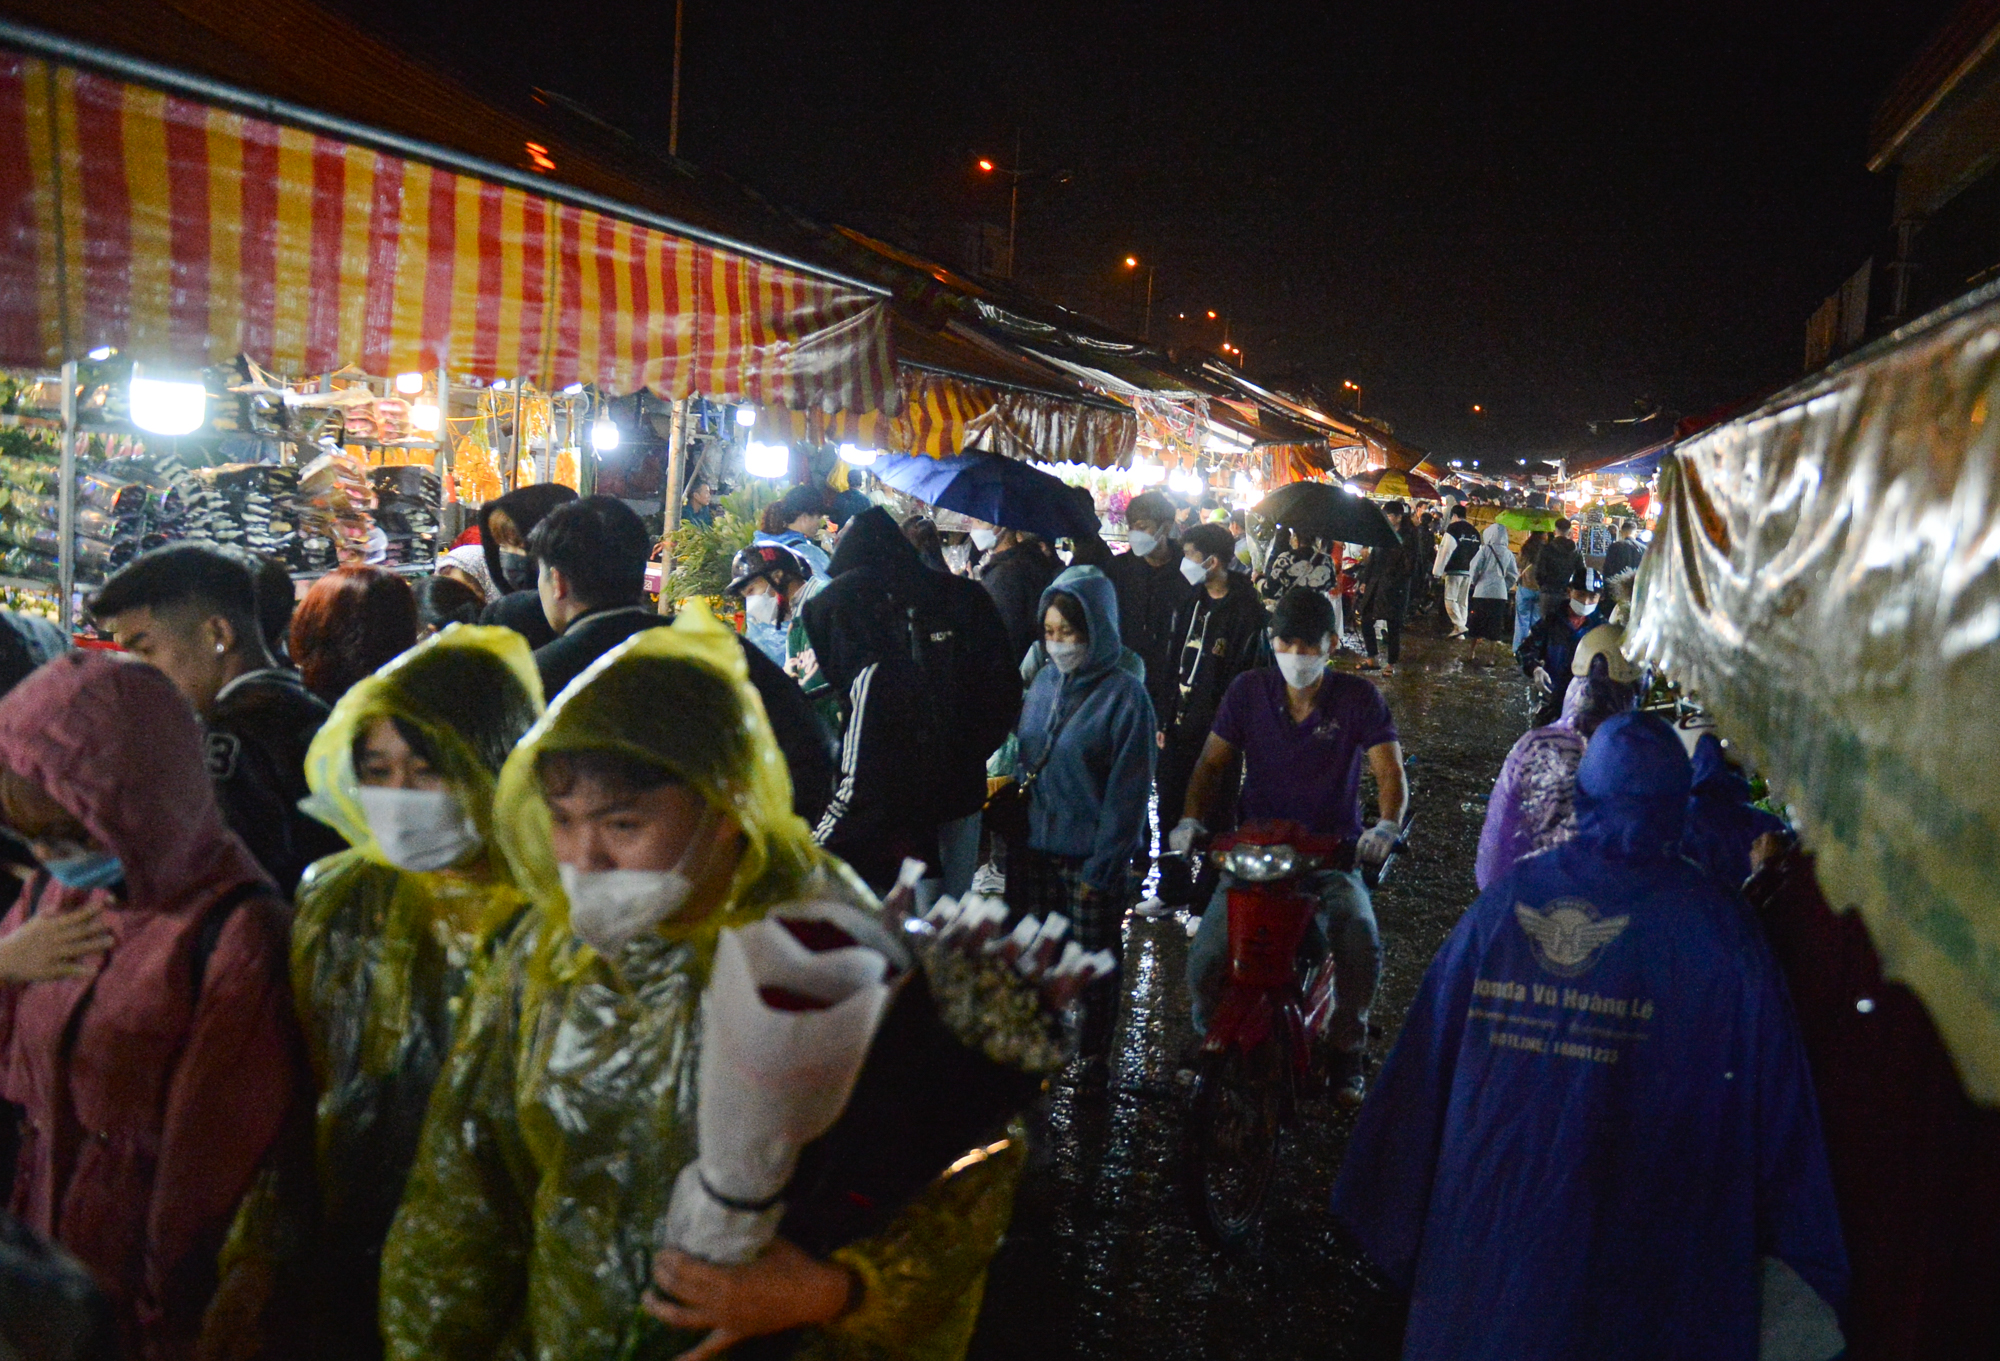 Ảnh: Mặc áo mưa, đội ô đi chợ hoa đêm lớn nhất miền Bắc trước ngày Phụ nữ Việt Nam 20/10, nhiều người co ro vì lạnh - Ảnh 2.